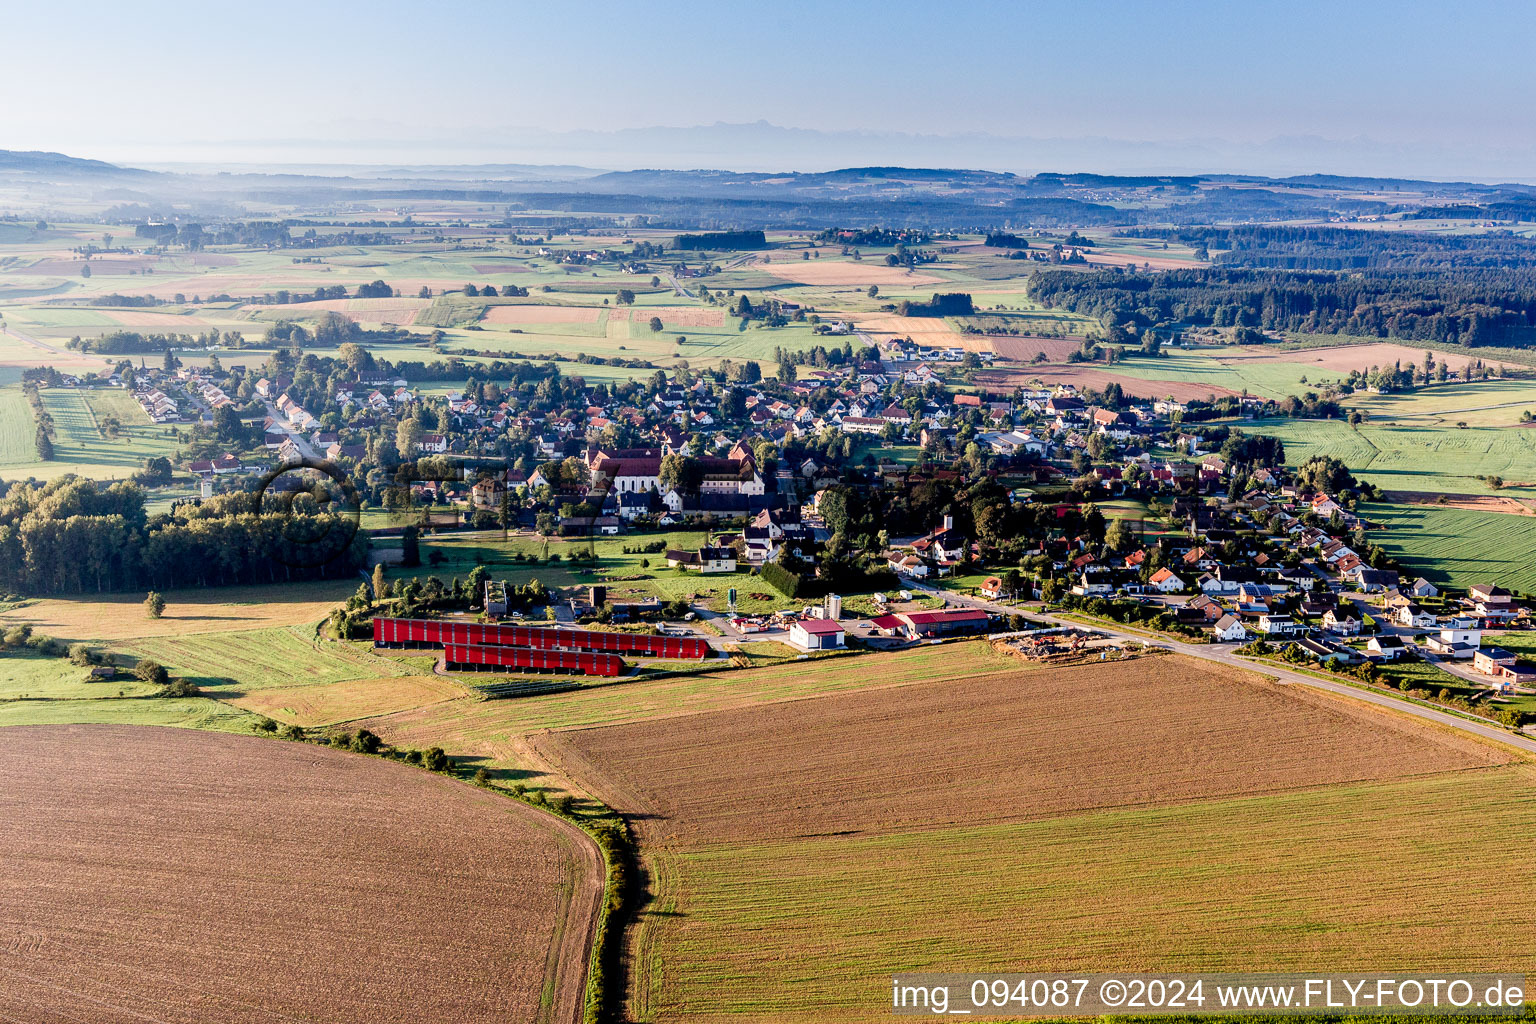 Vue aérienne de Champs agricoles et surfaces utilisables à Wald dans le département Bade-Wurtemberg, Allemagne